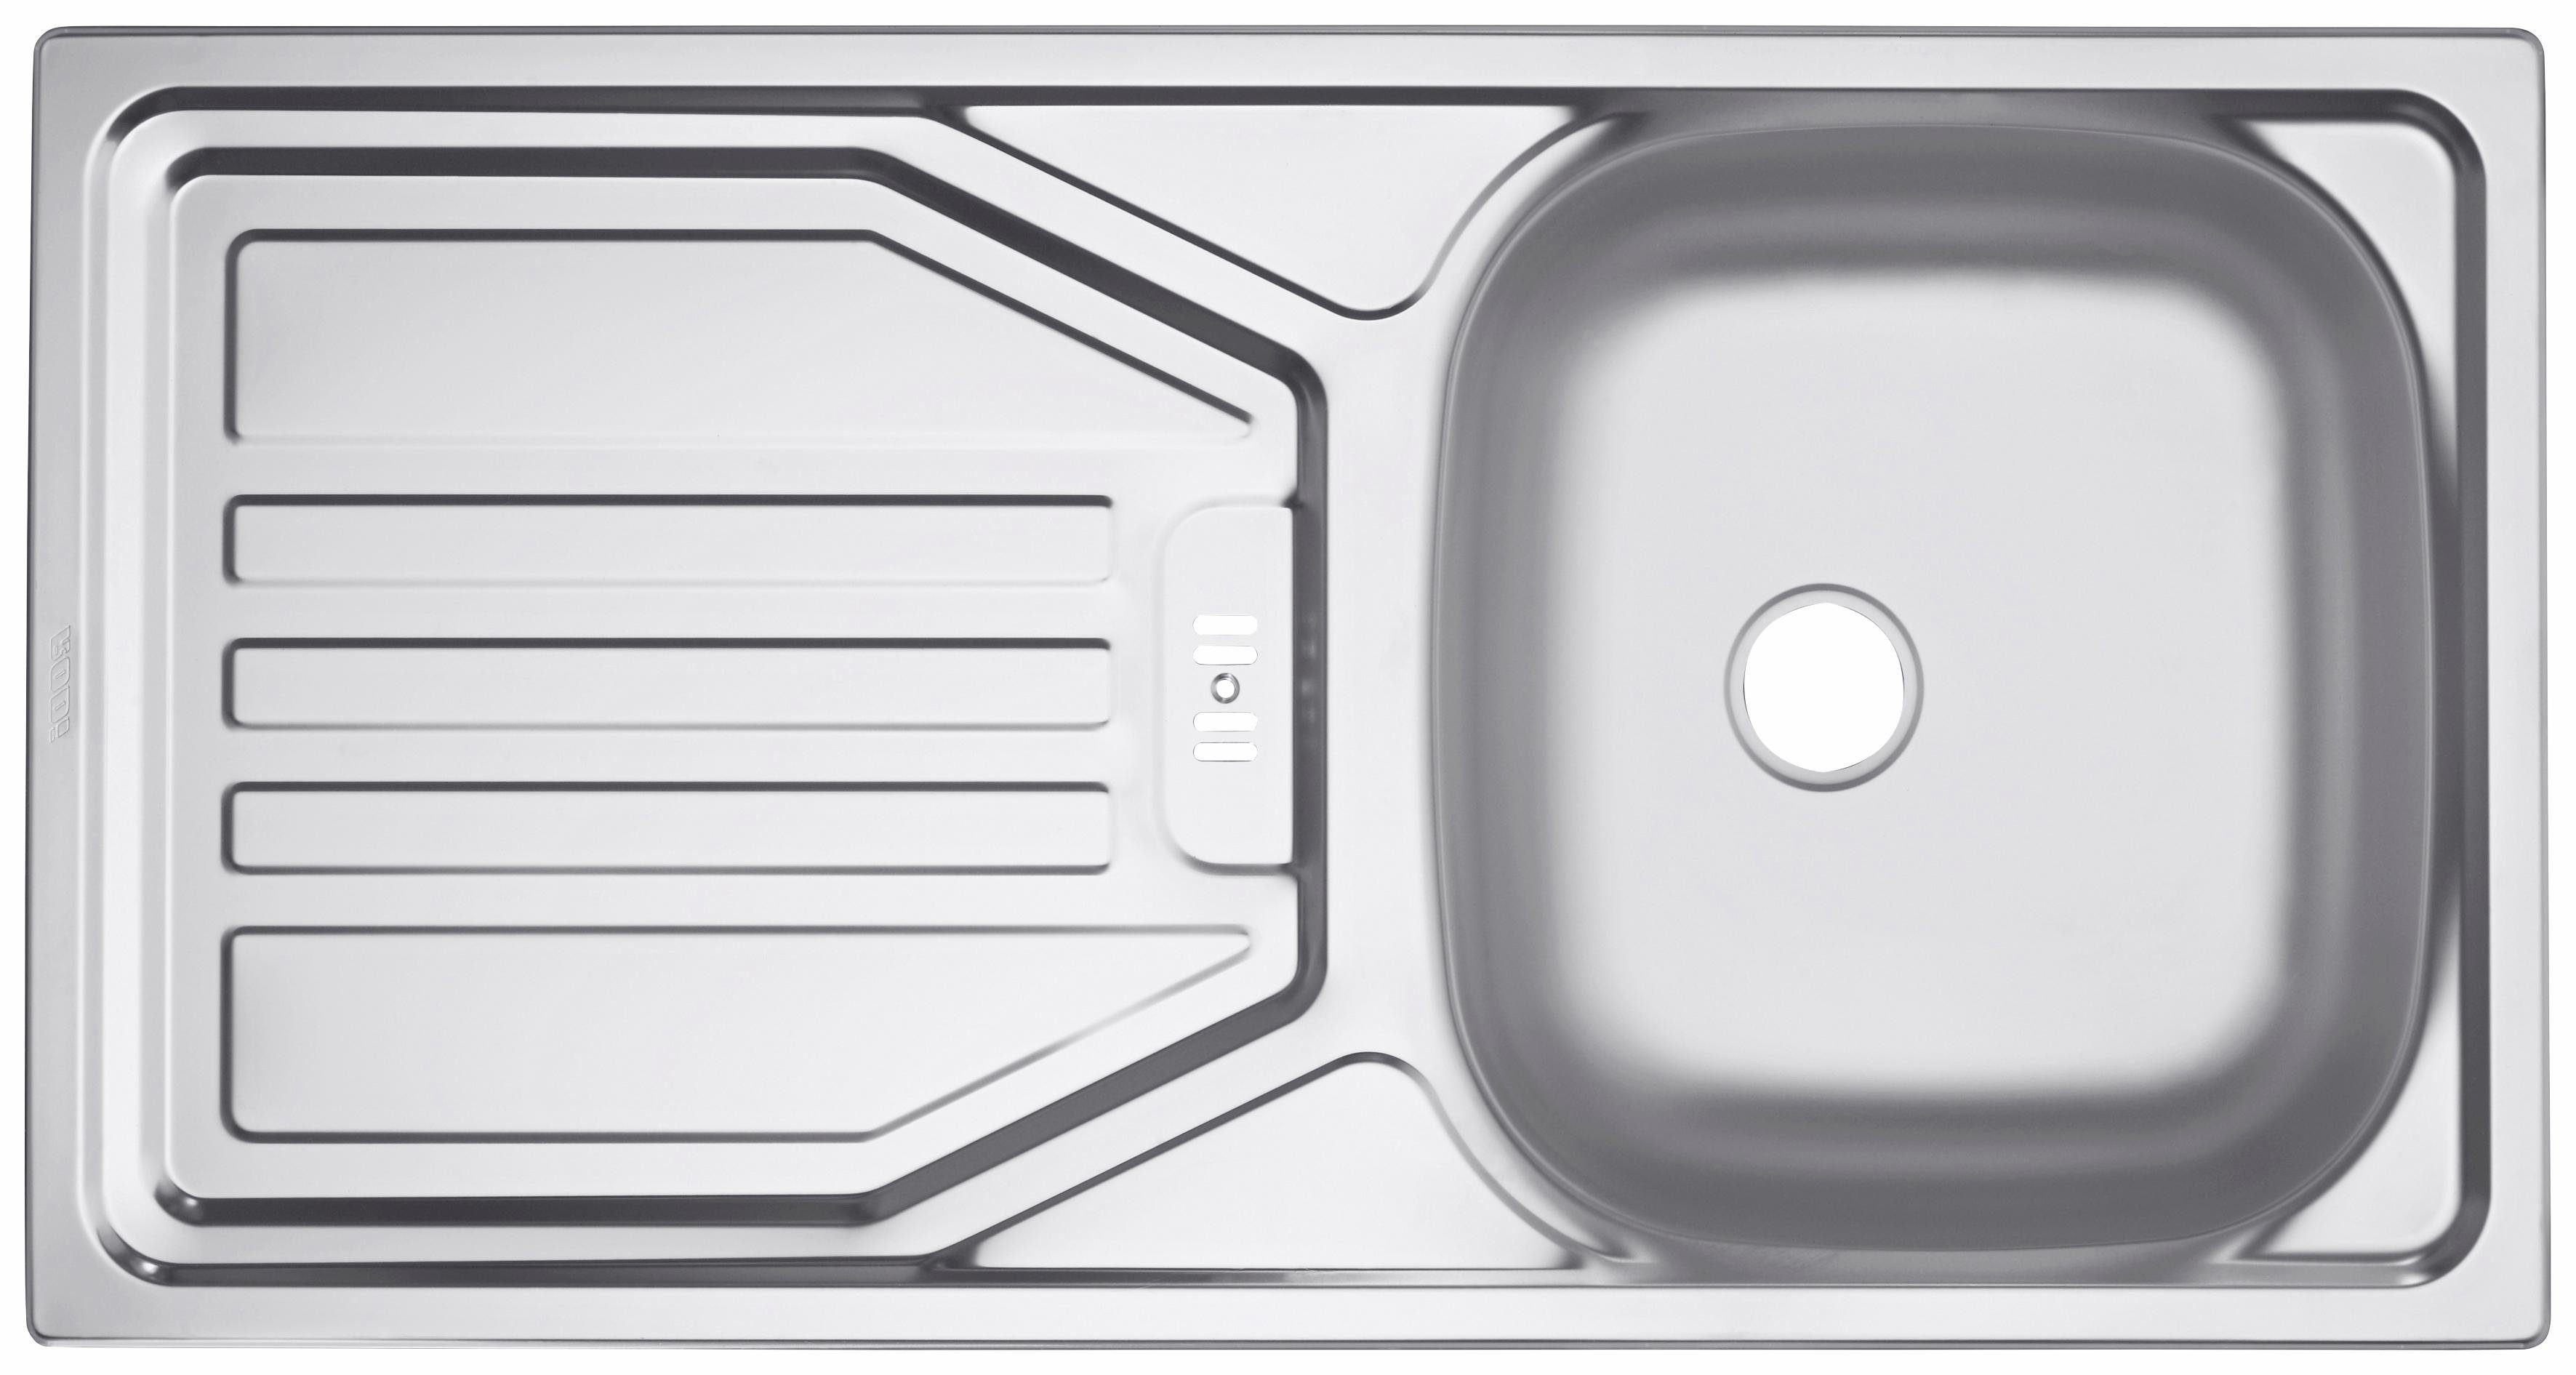 HELD MÖBEL Spülenschrank Utah Weiß cm, für Tür/Sockel Geschirrspüler 110 mit Hochglanz Breite